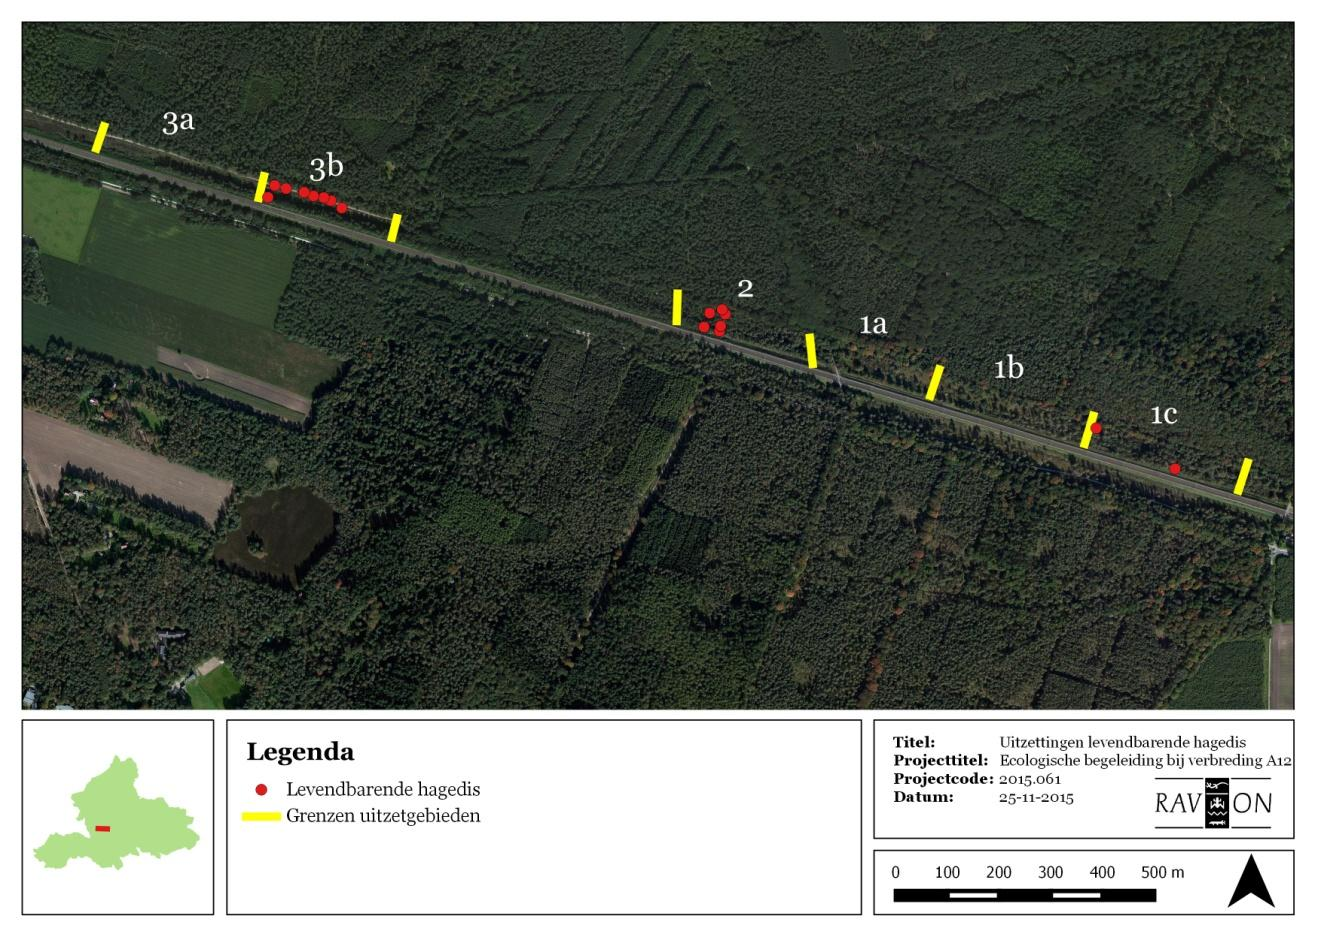 Translocatie reptielen A12 4.6.3 Levendbarende hagedis Figuur 23 toont de uitzettingen van levendbarende hagedissen. Deze hebben uitsluitend langs het spoor plaatsgevonden.